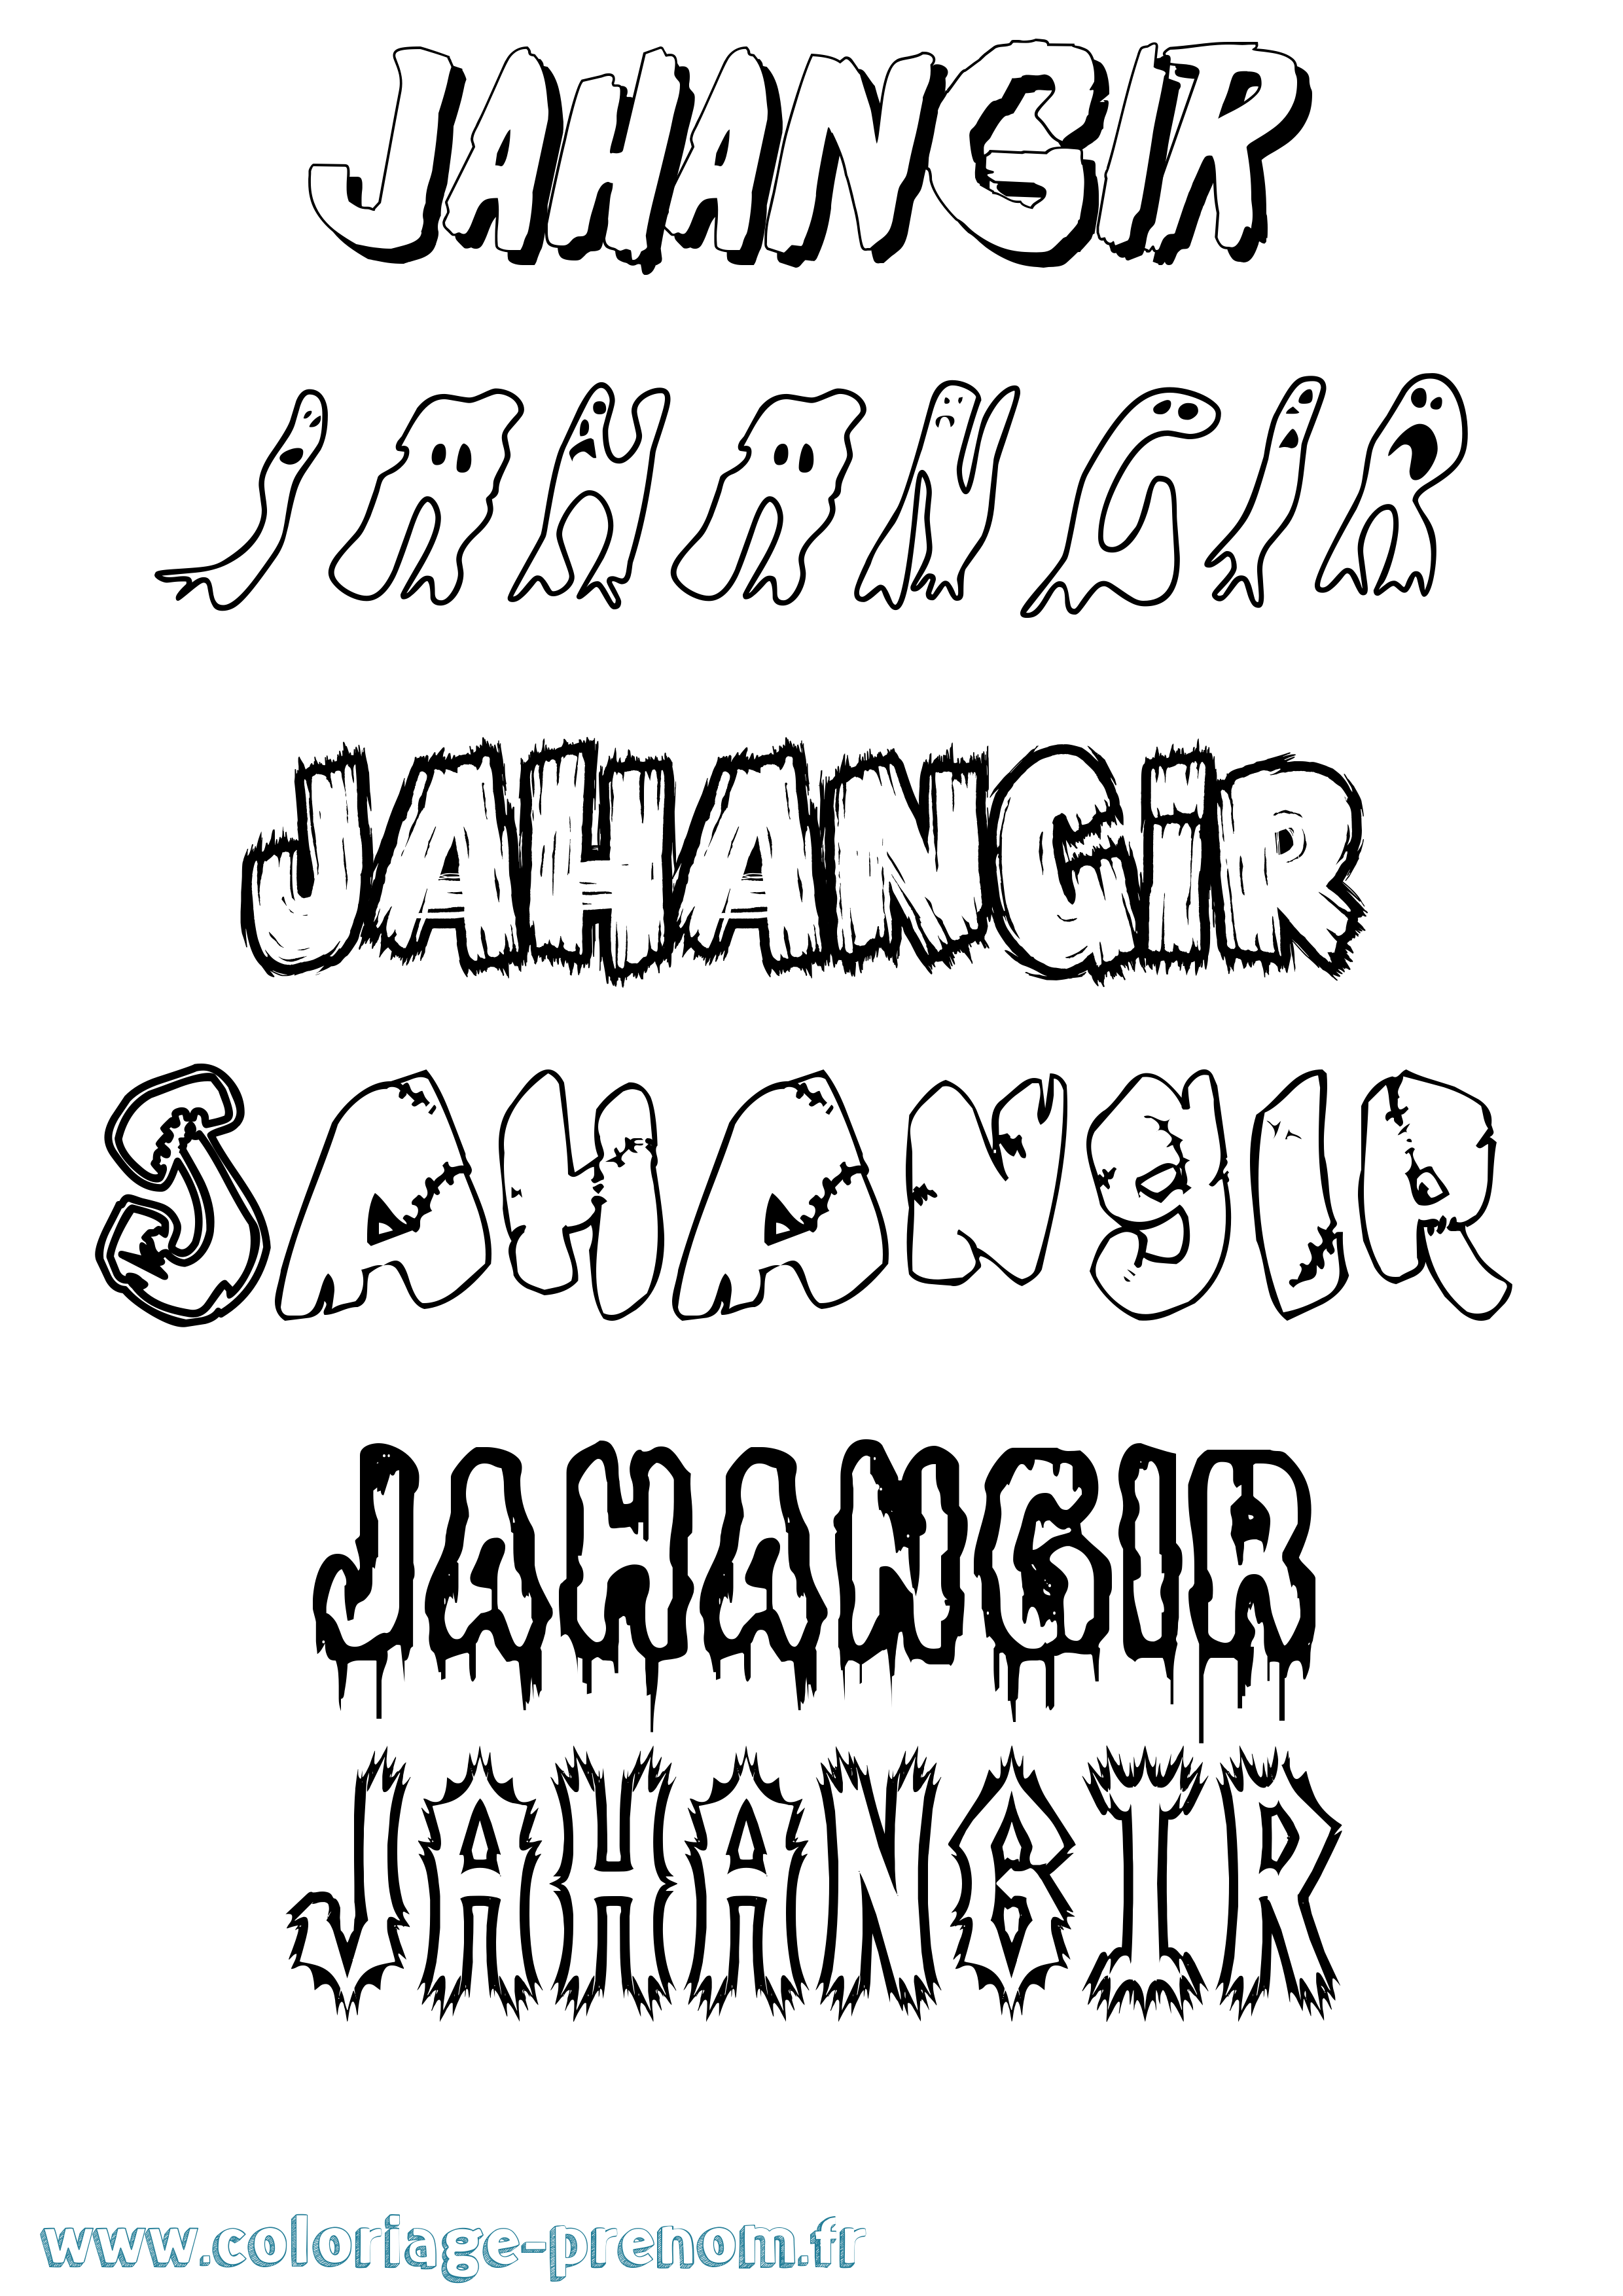 Coloriage prénom Jahangir Frisson